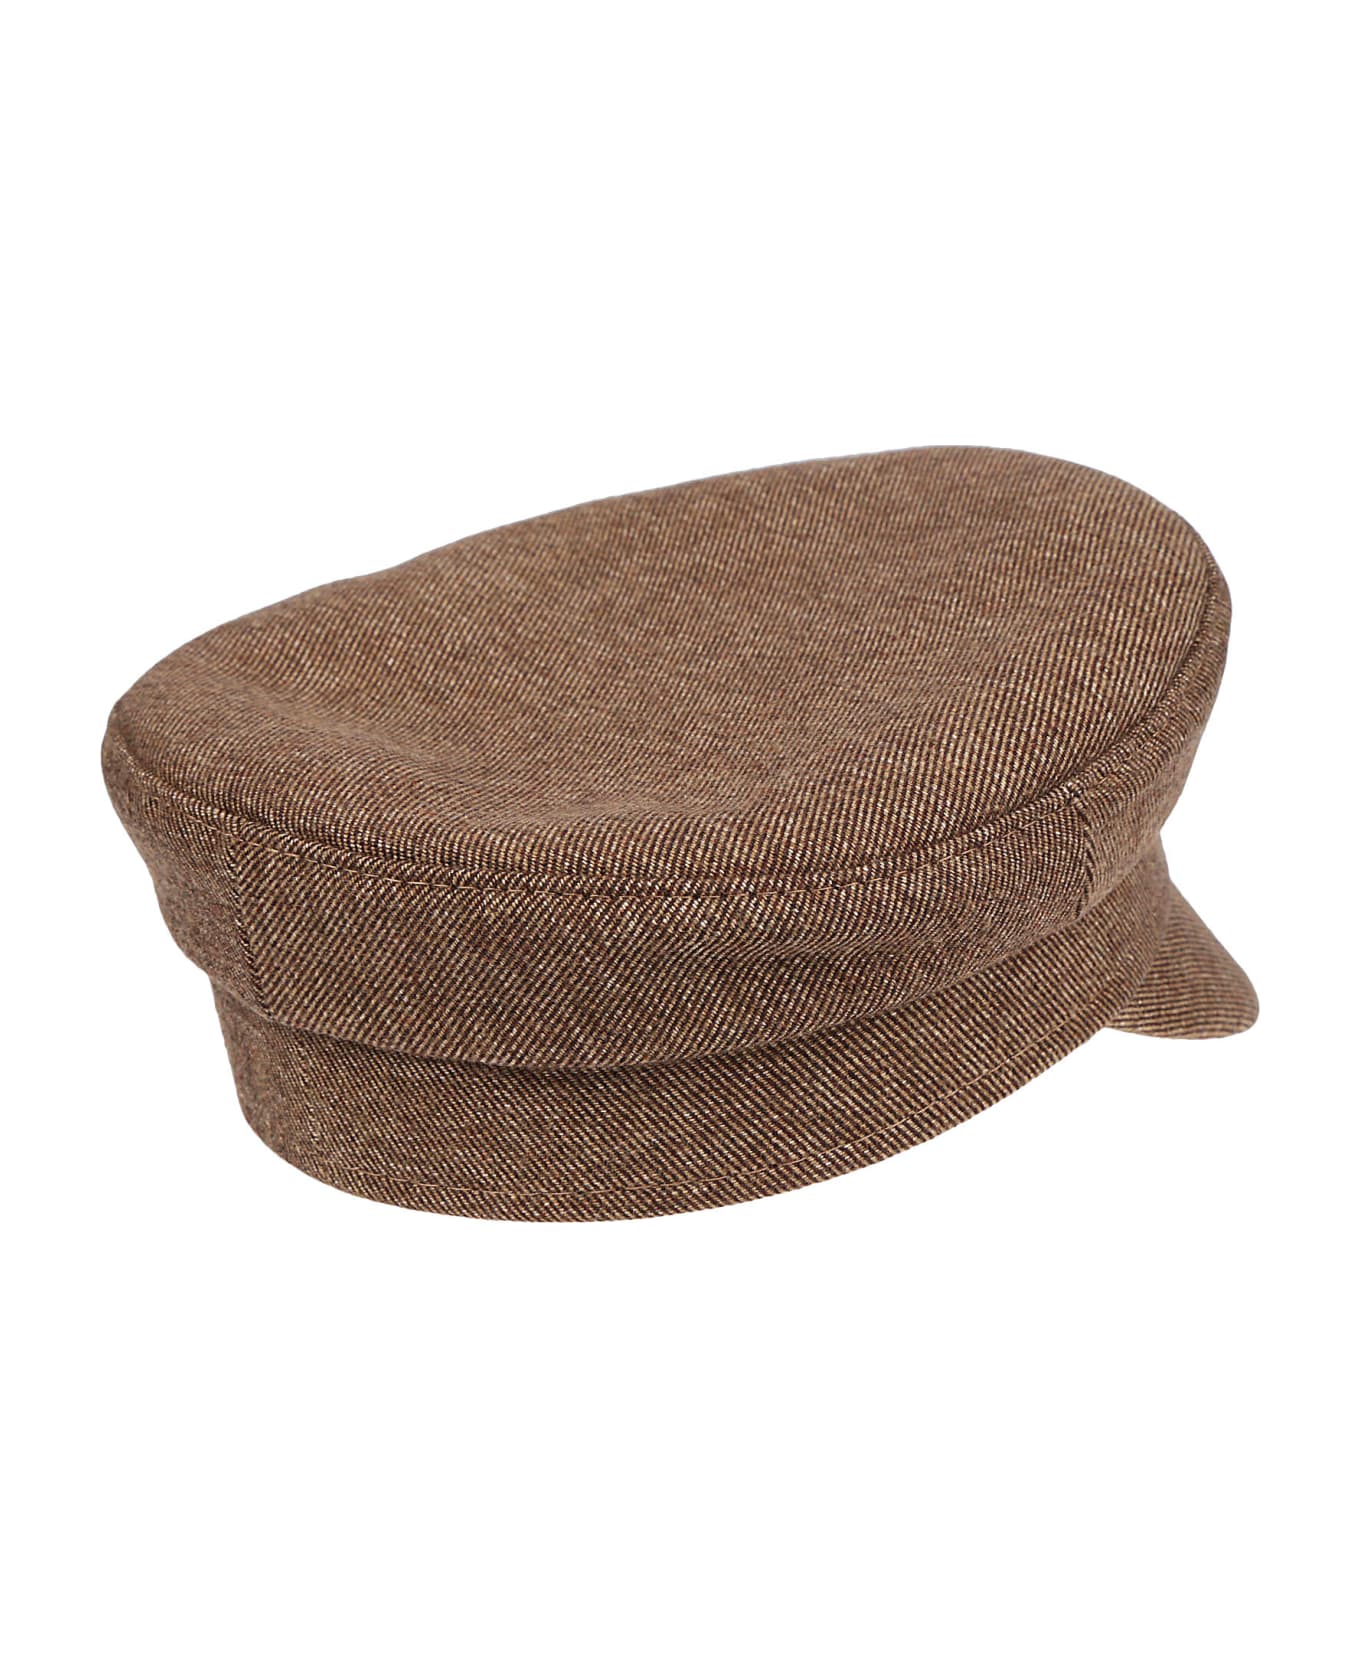 Ruslan Baginskiy Baker Boy Hat - Brown 帽子